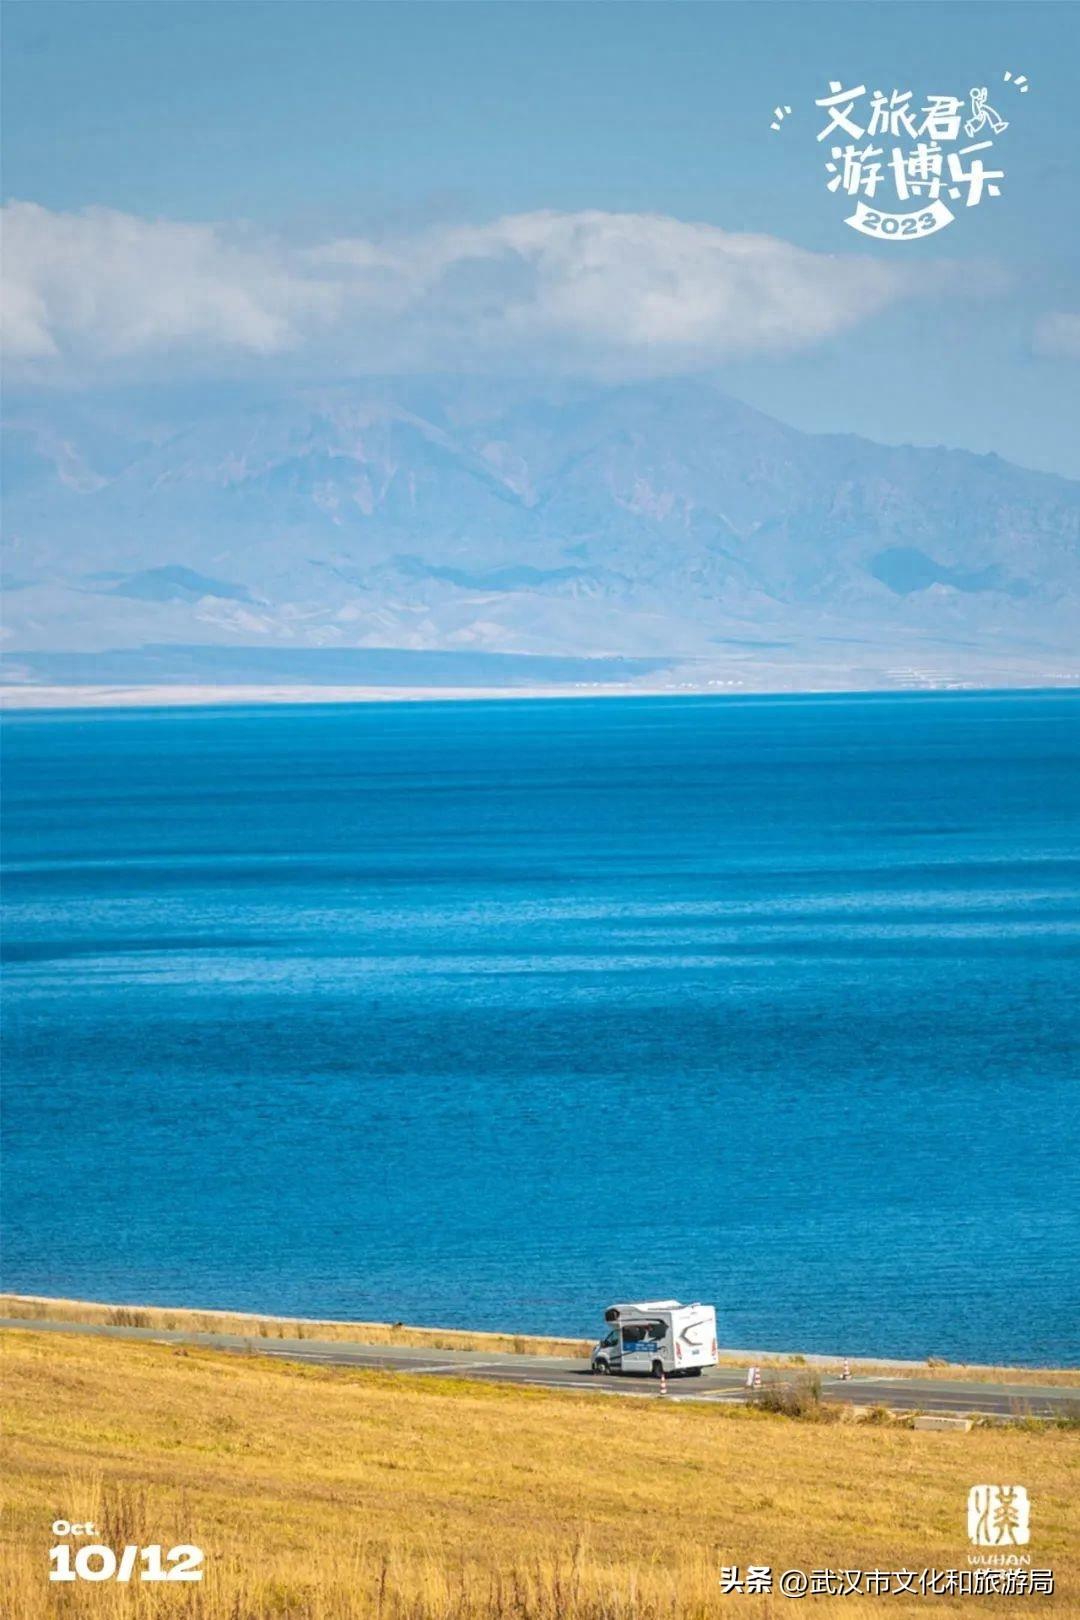 又来安利新疆了，这个湖绝美！